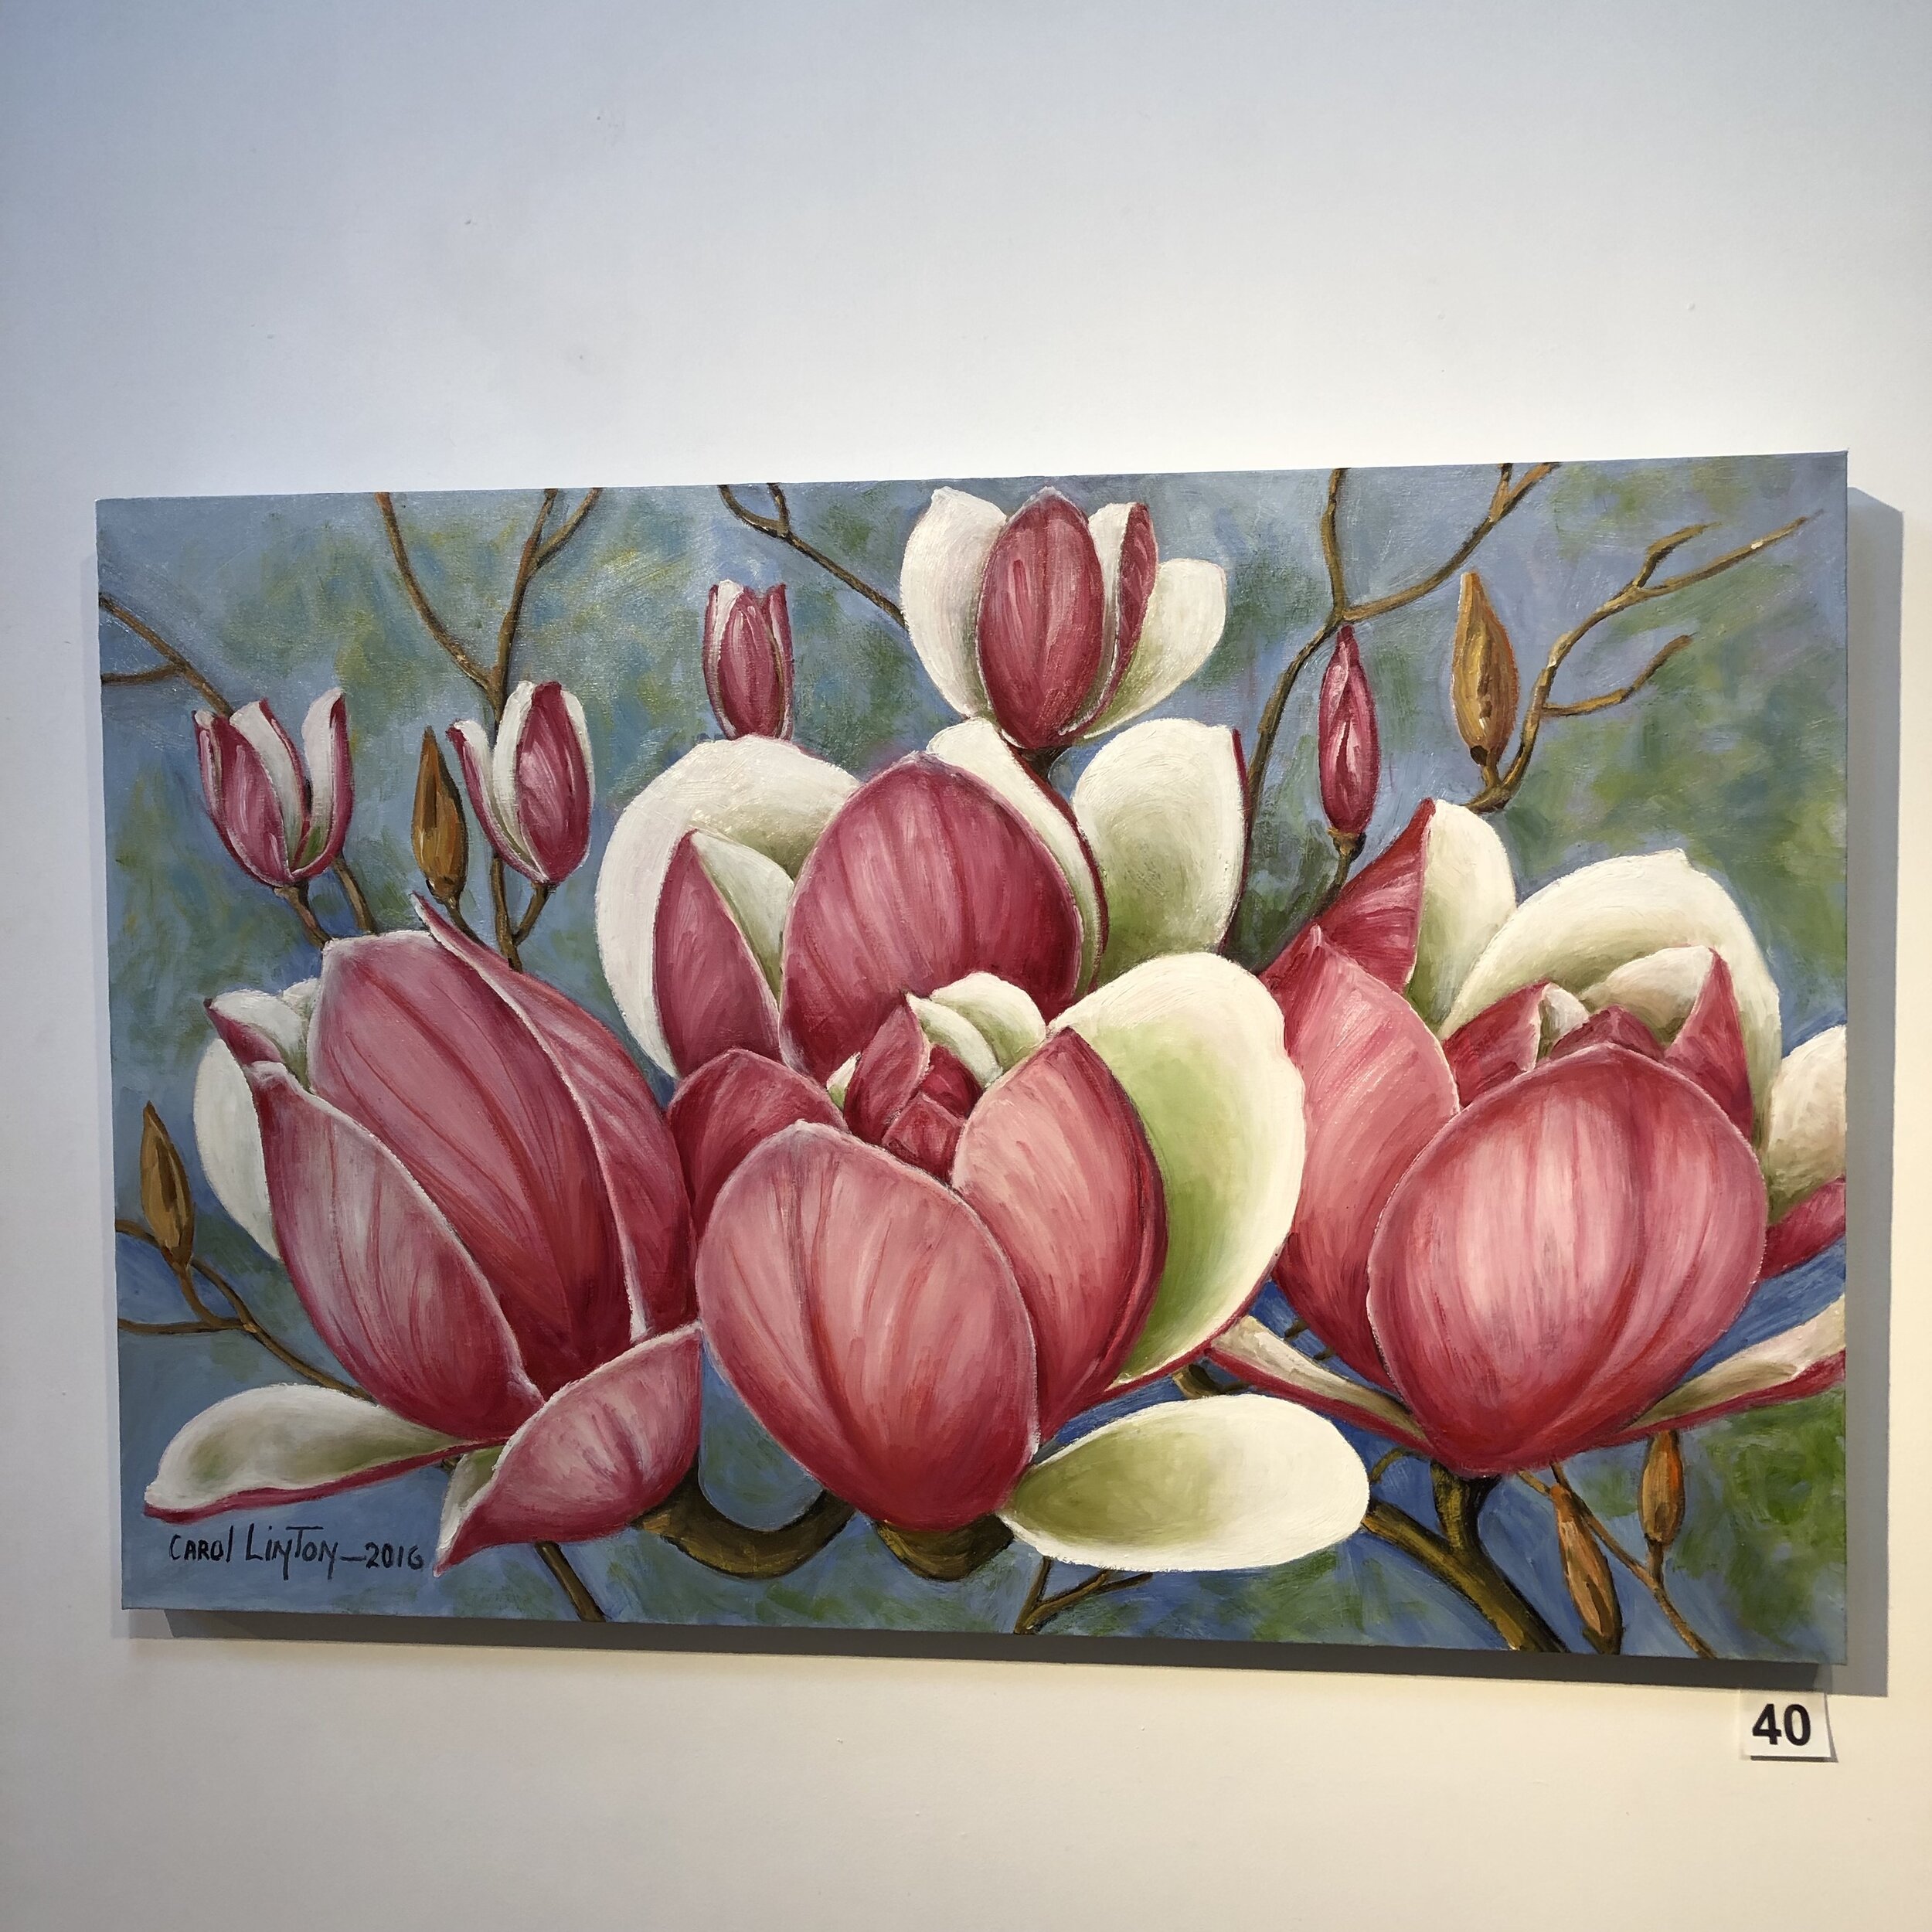 "Magnolias" by Carol Linton